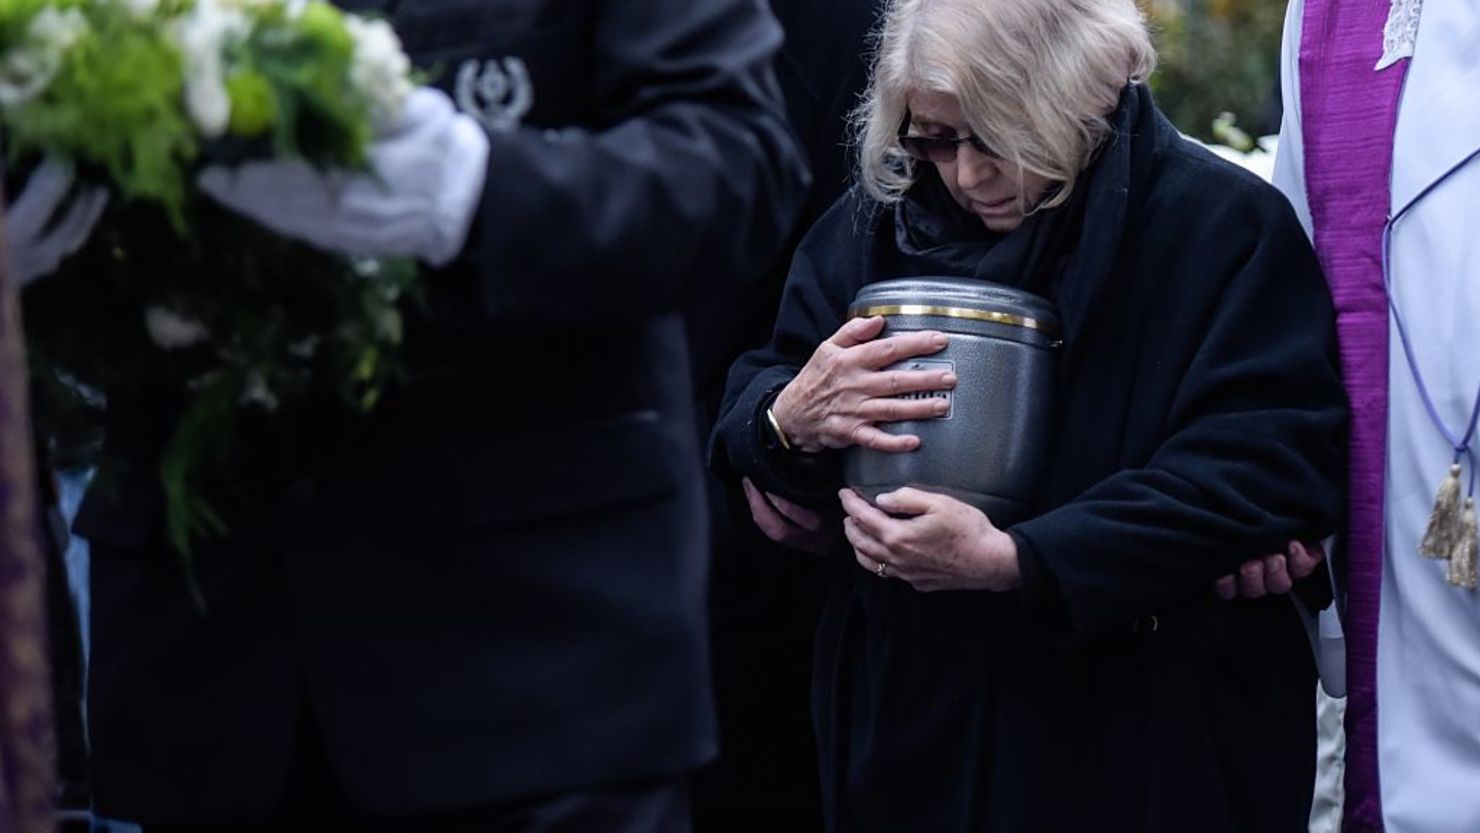 La Iglesia Católica reconoce que la práctica de la cremación está muy difundida entre los fieles y ha habido un aumento incesante en la elección de esta práctica frente a la opción de los entierros de los difuntos.